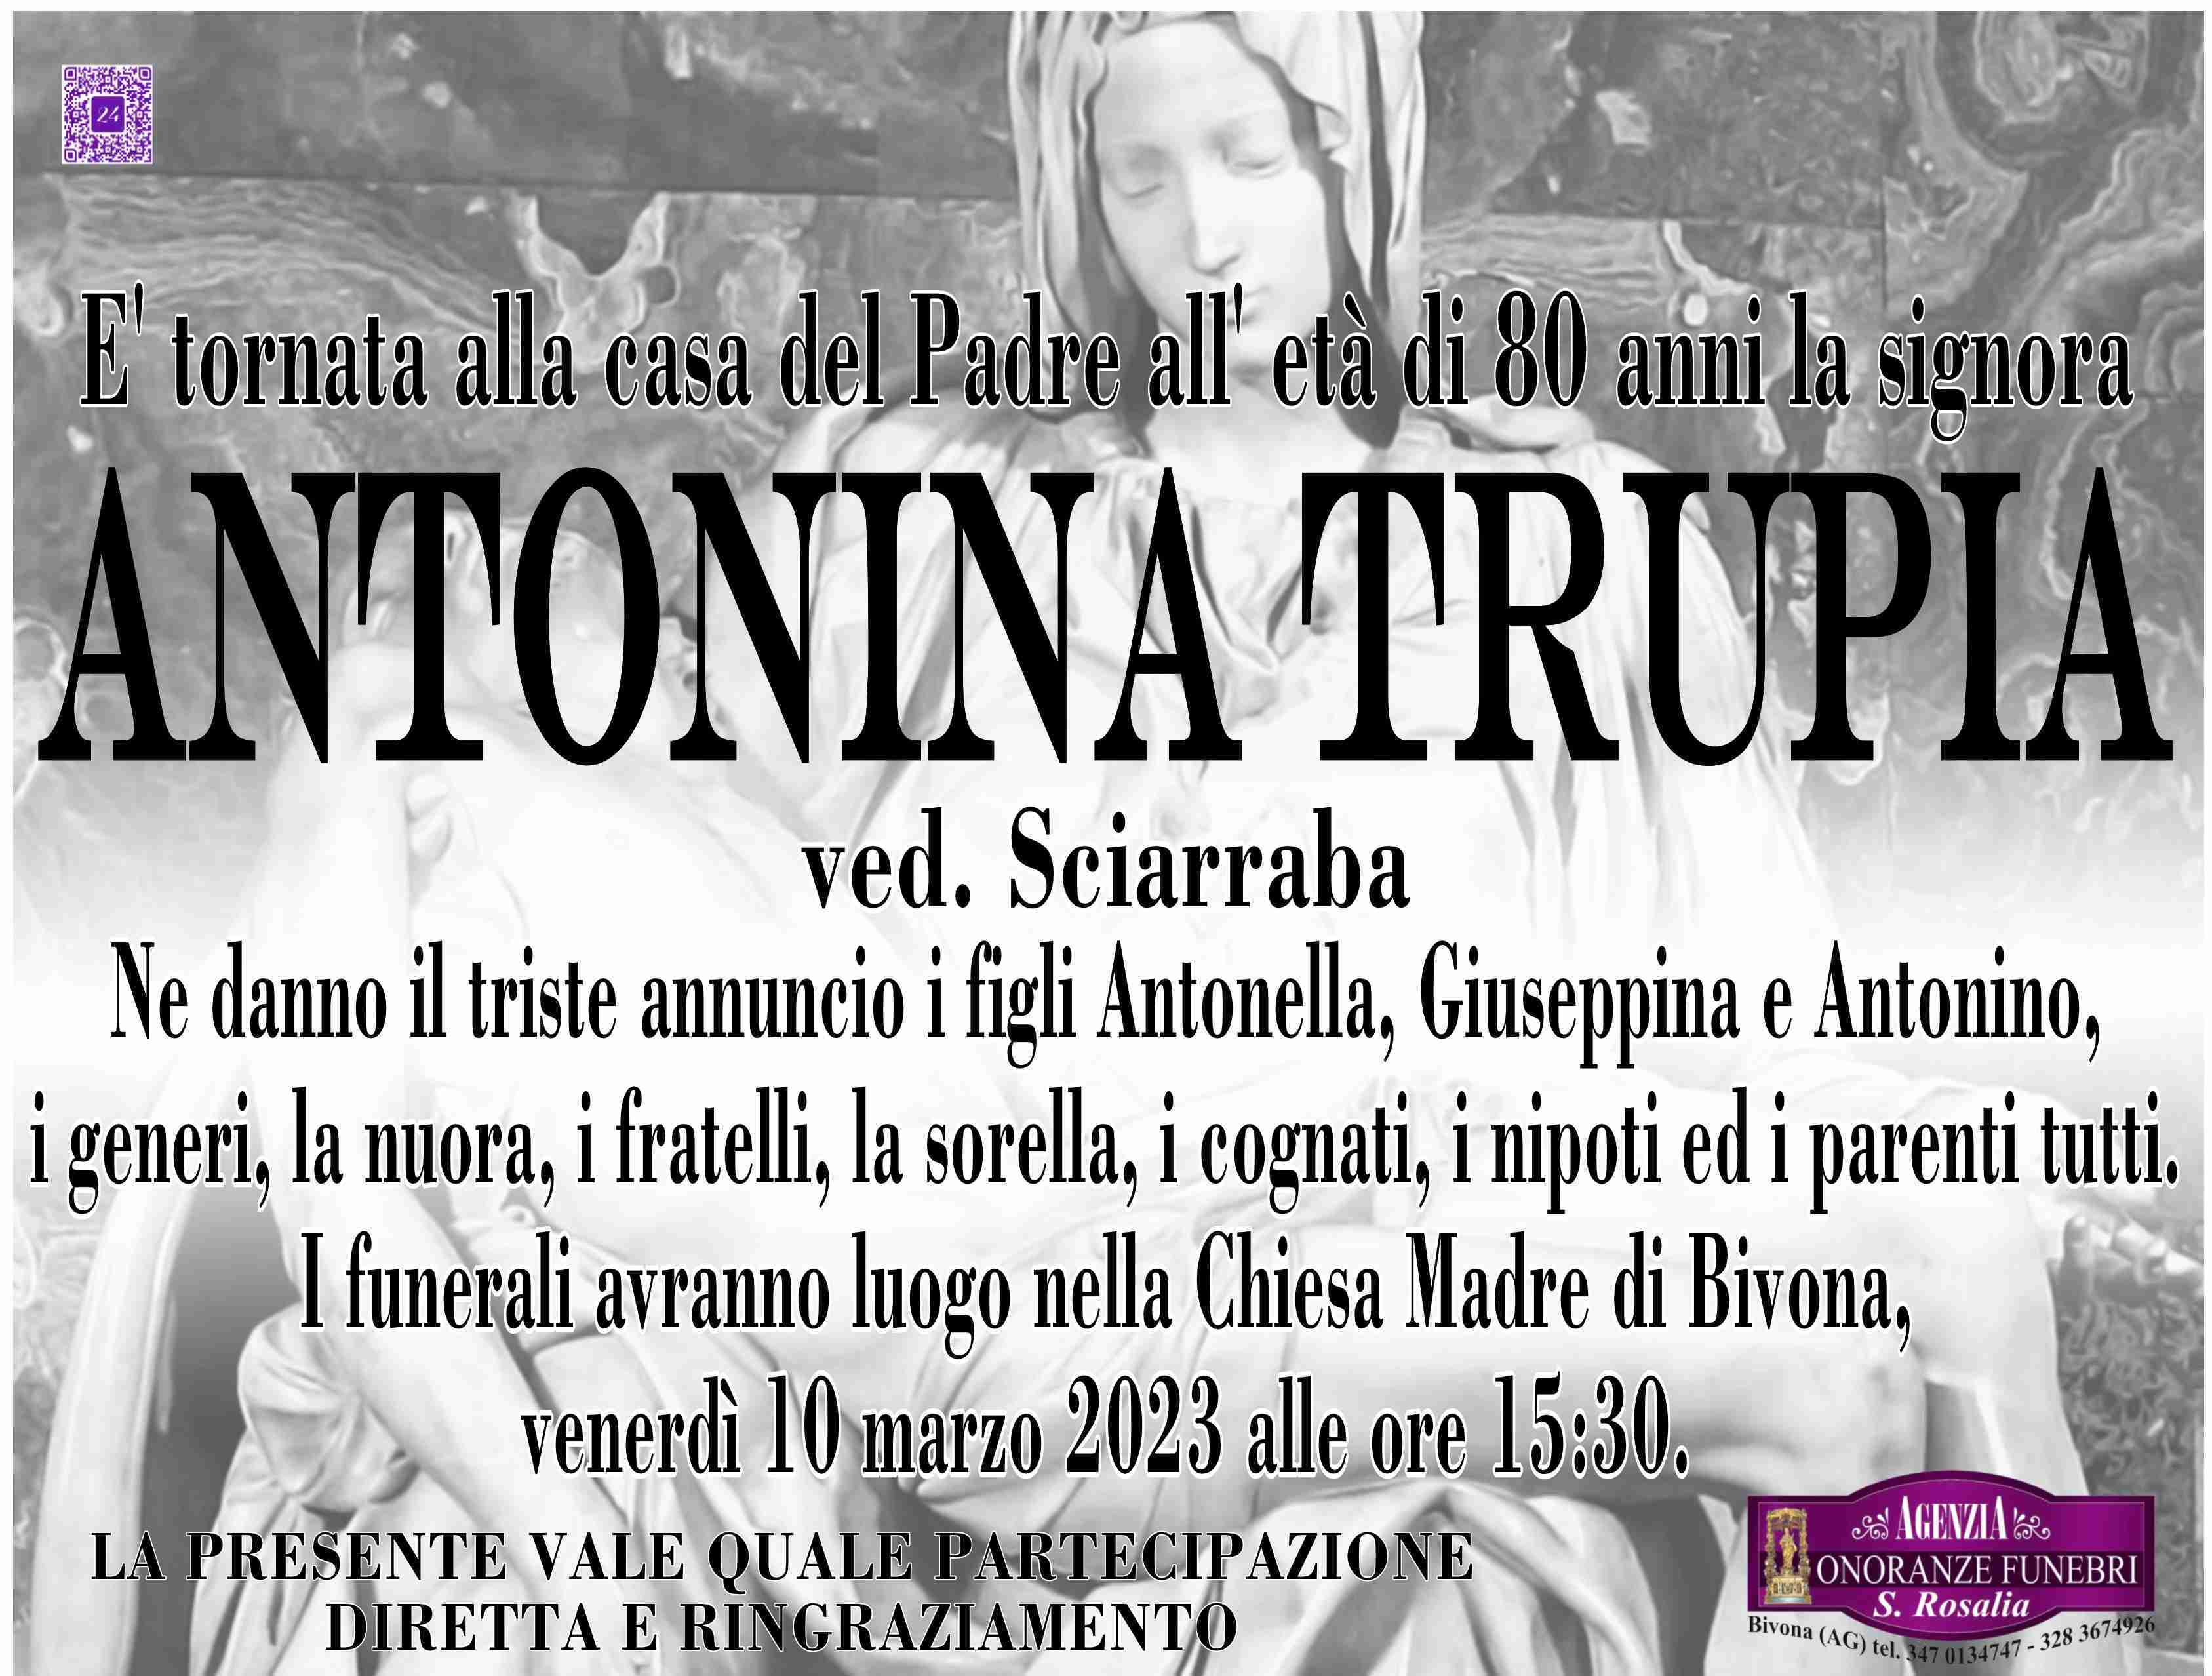 Antonina Trupia